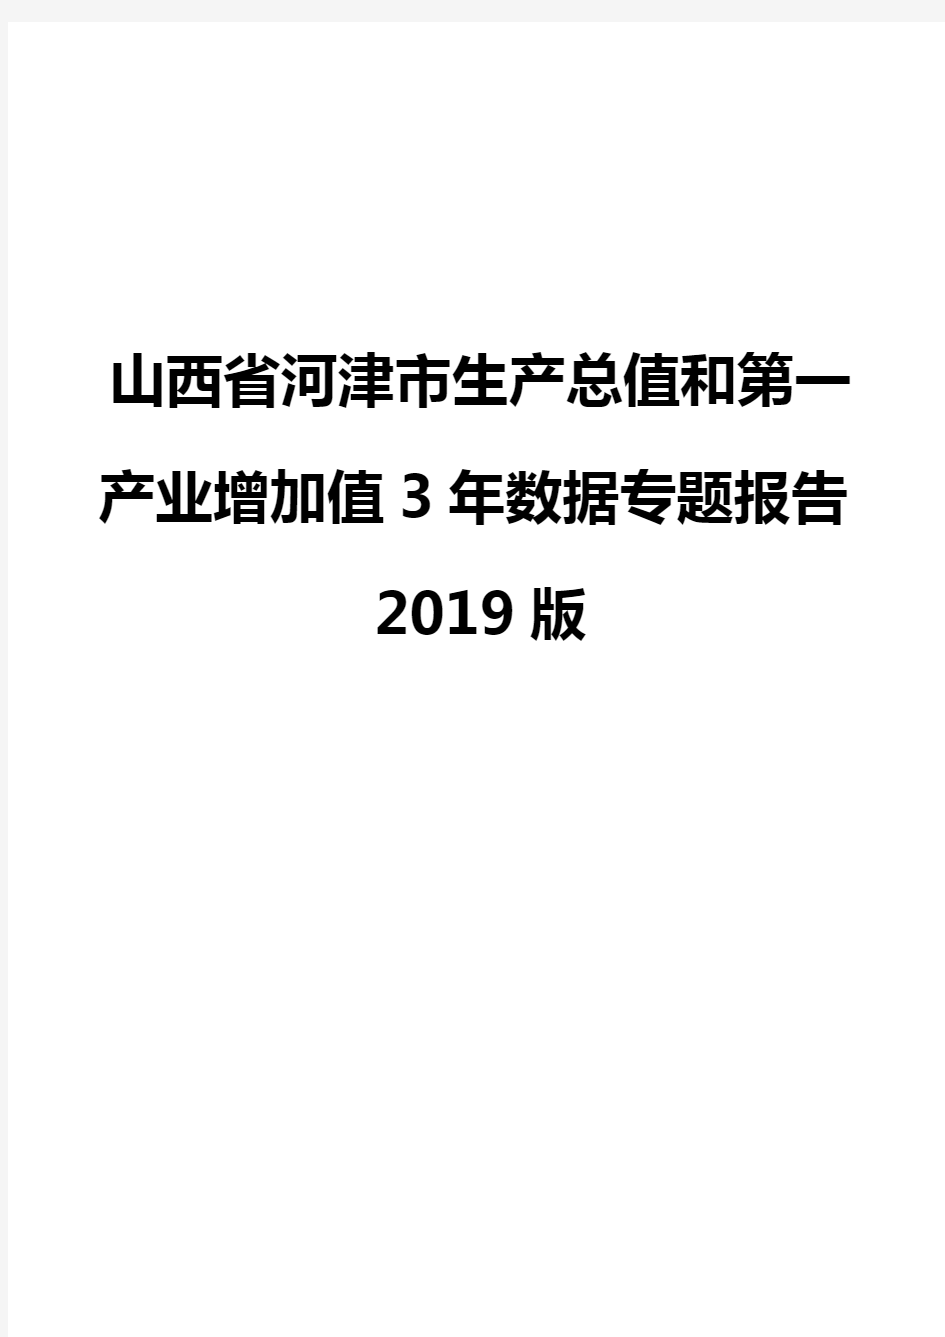 山西省河津市生产总值和第一产业增加值3年数据专题报告2019版